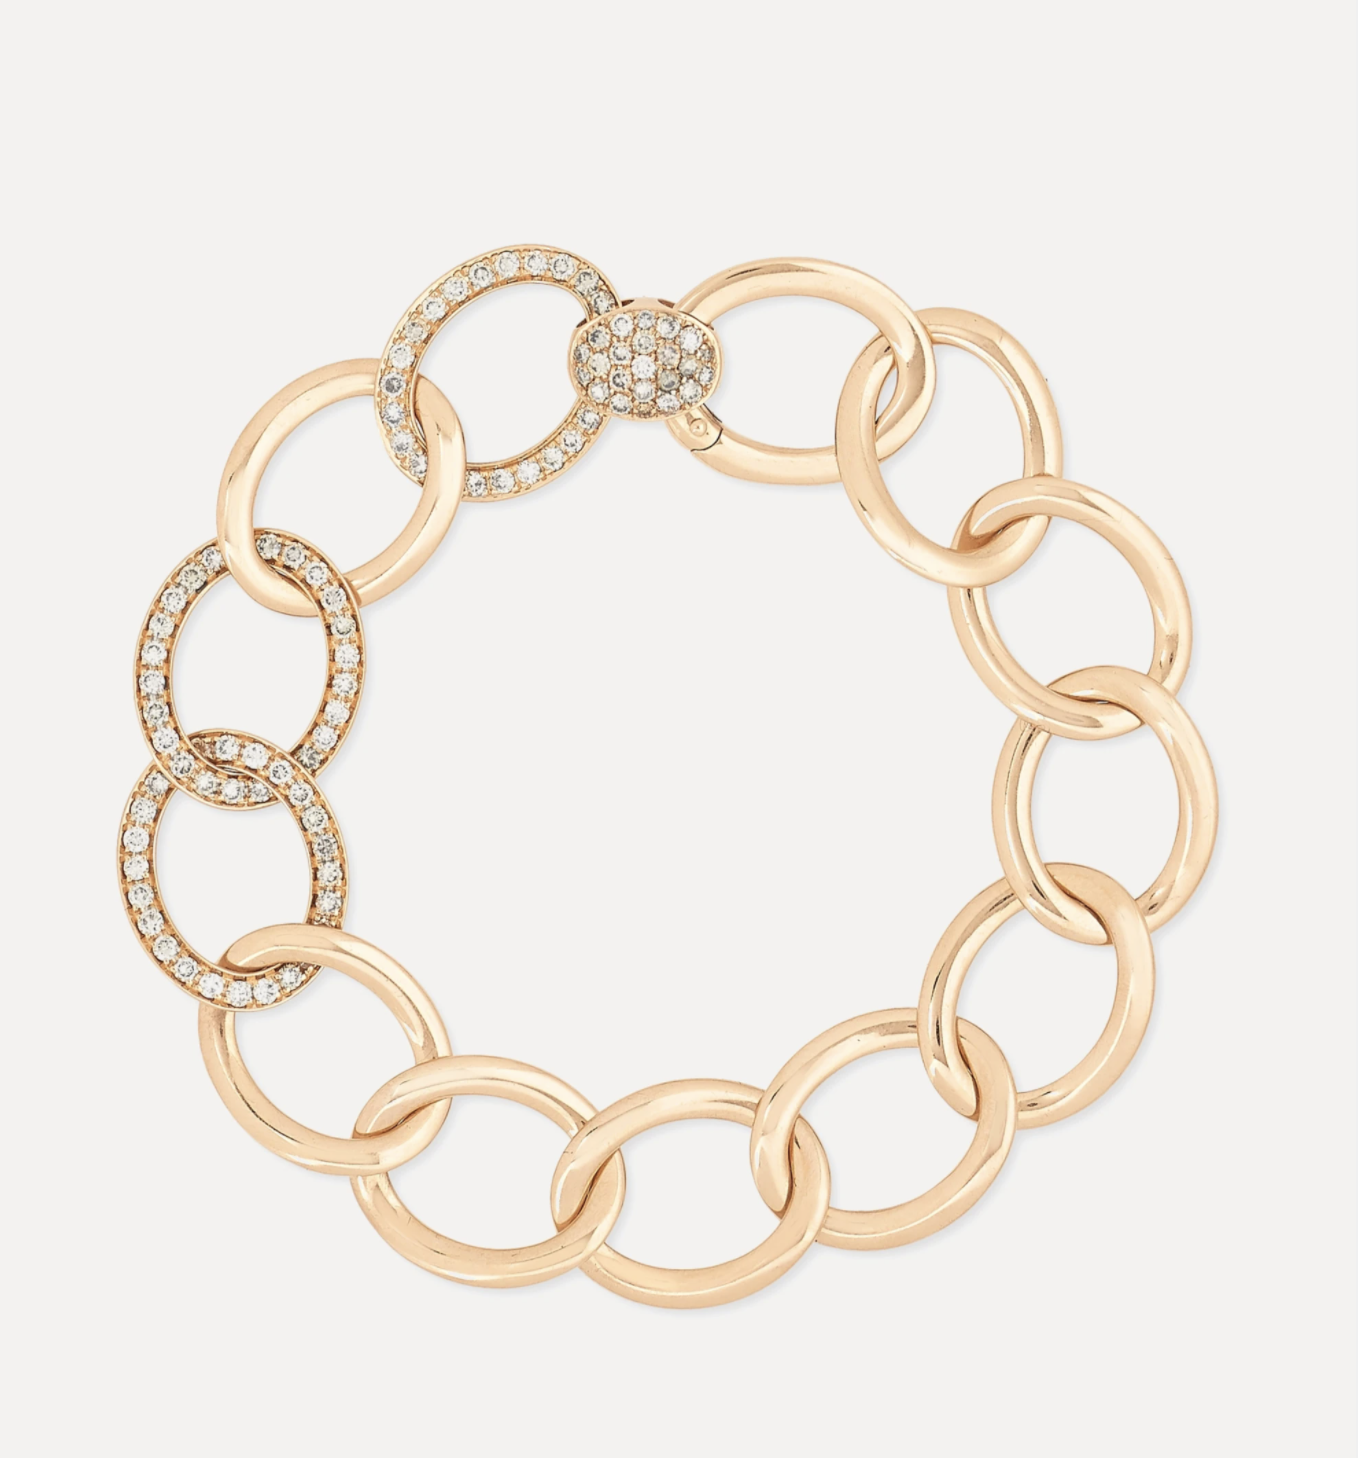 Tango bracelet in 18k rose gold with diamonds